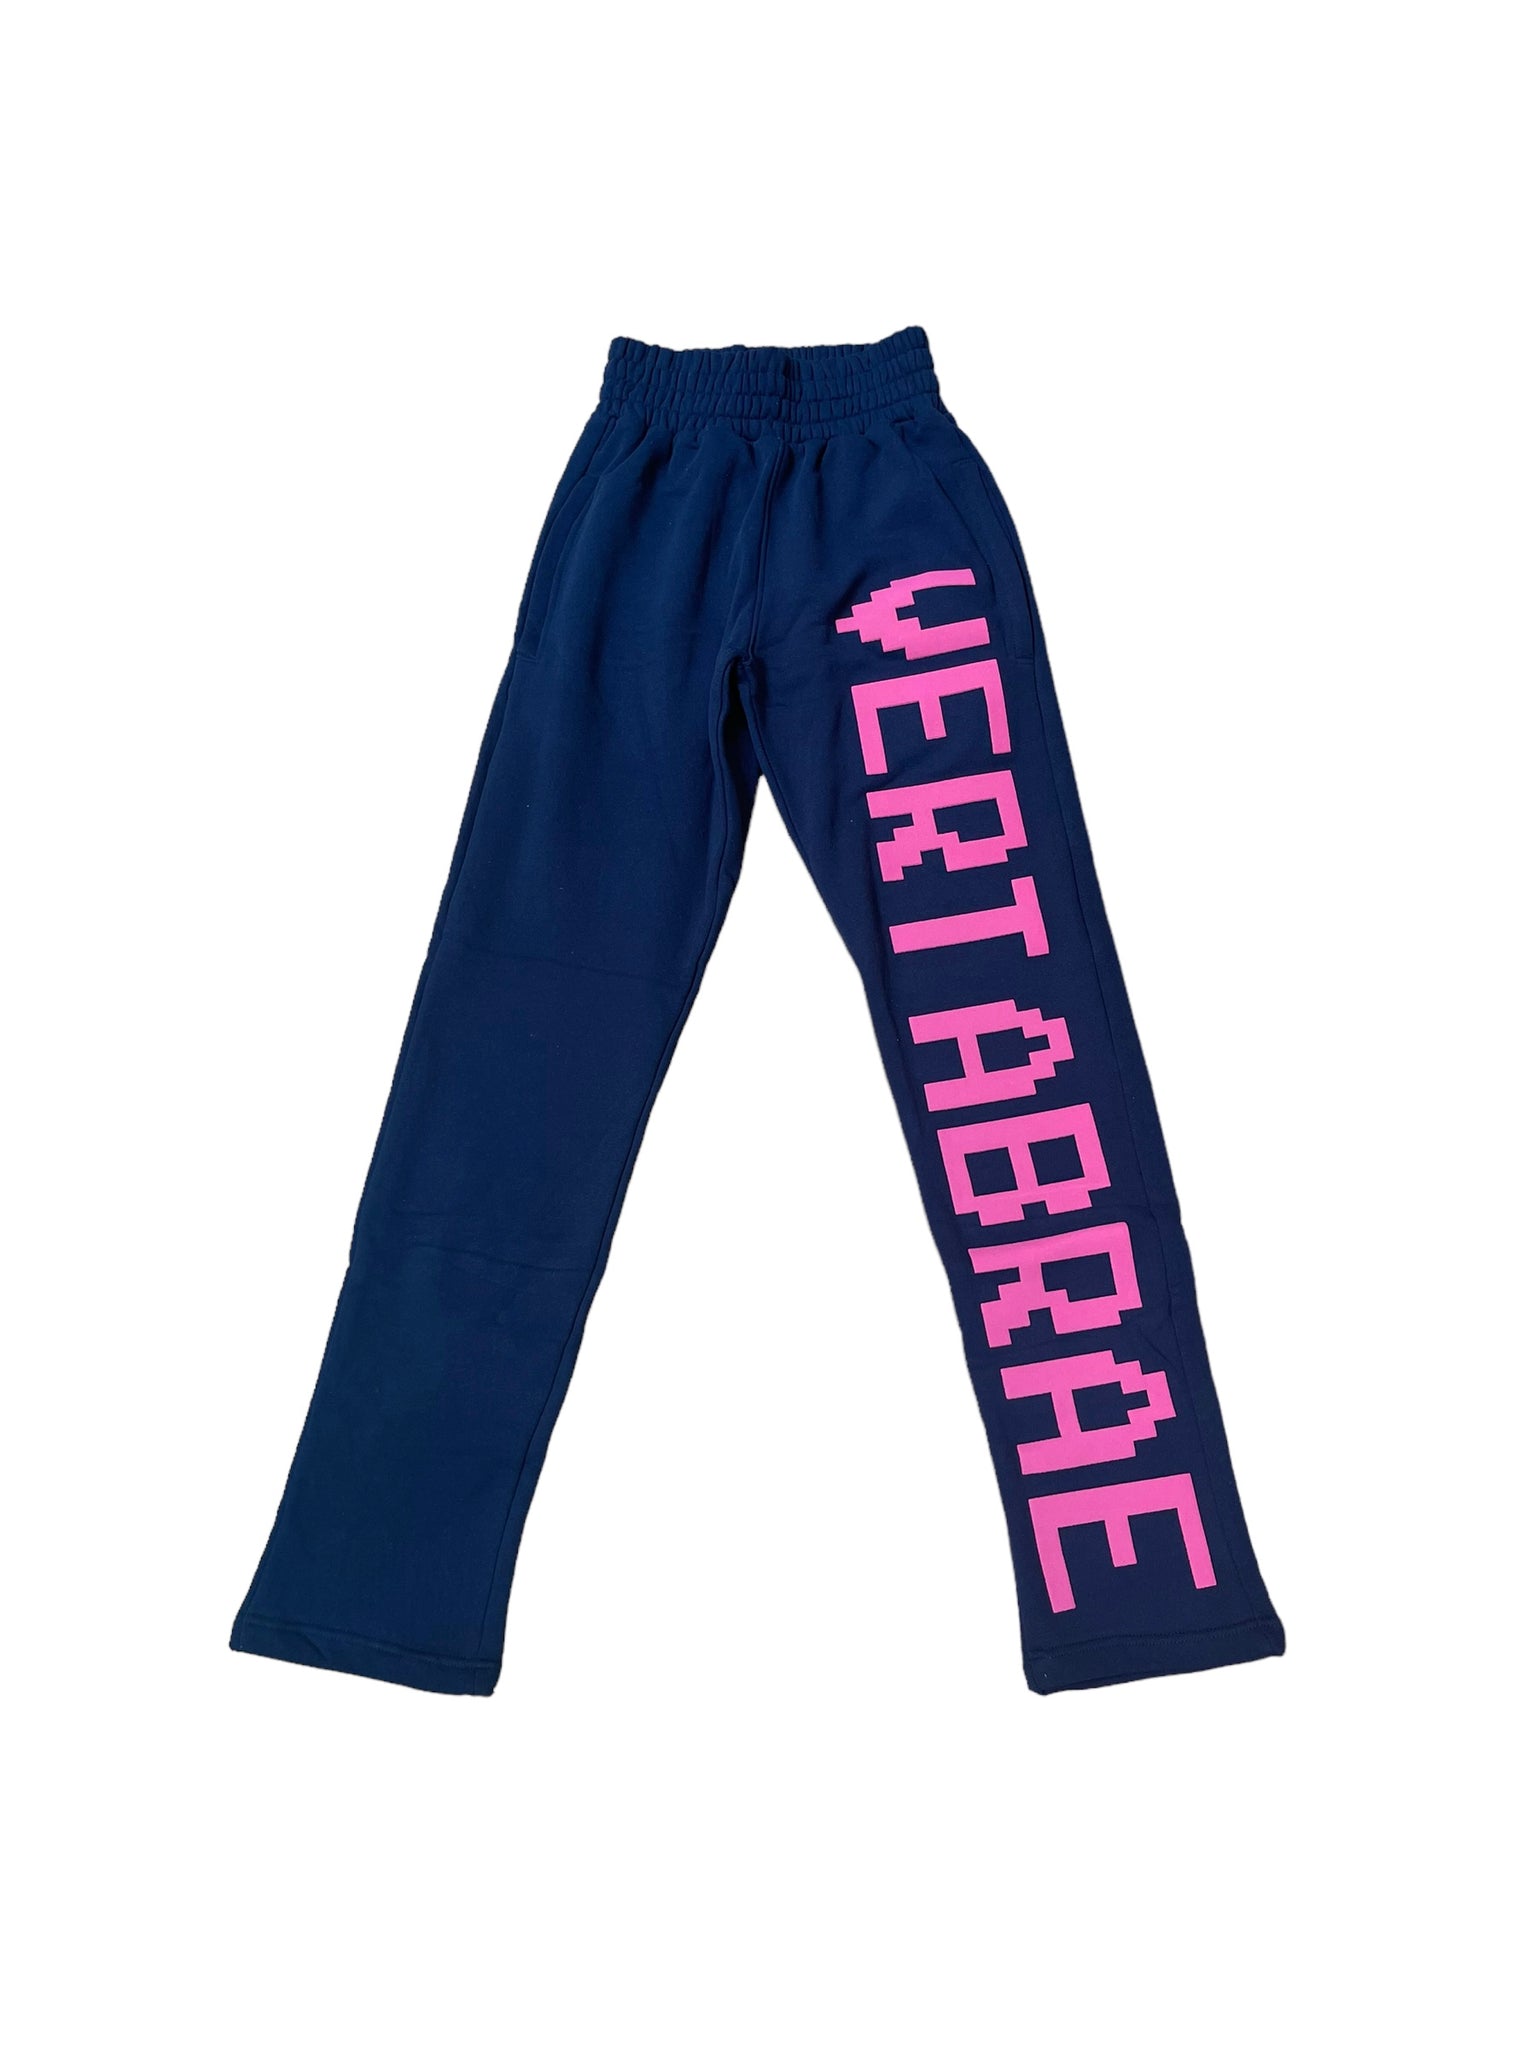 Vertabrae Single Leg Sweatpants "Navy/Pink"